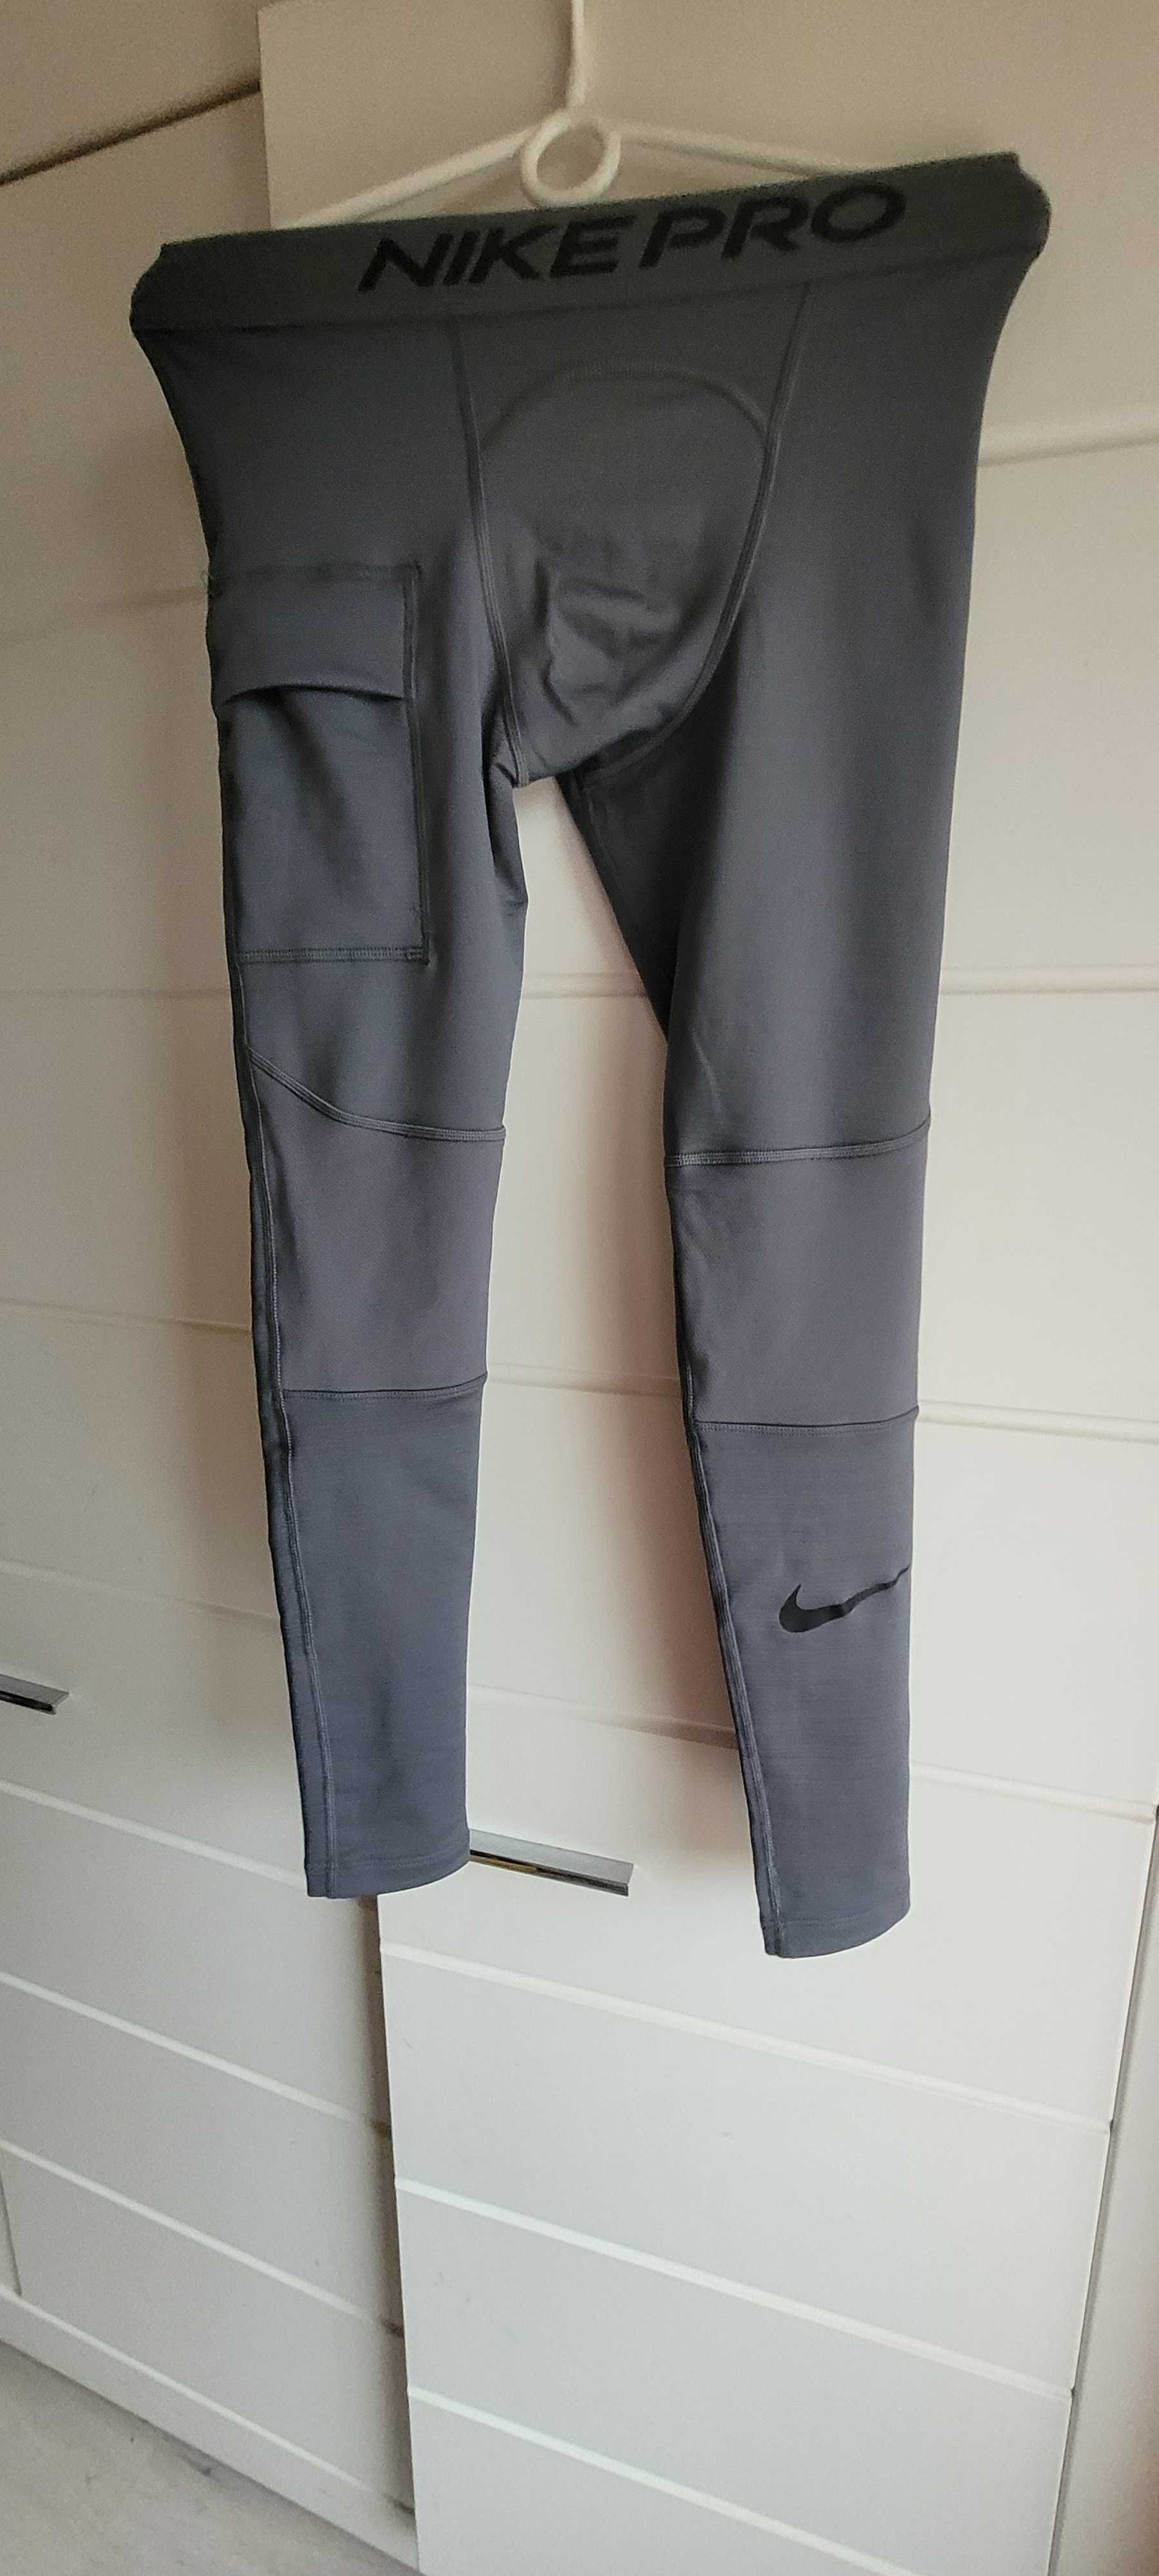 Nike spodnie męskie termiczne rozmiar S